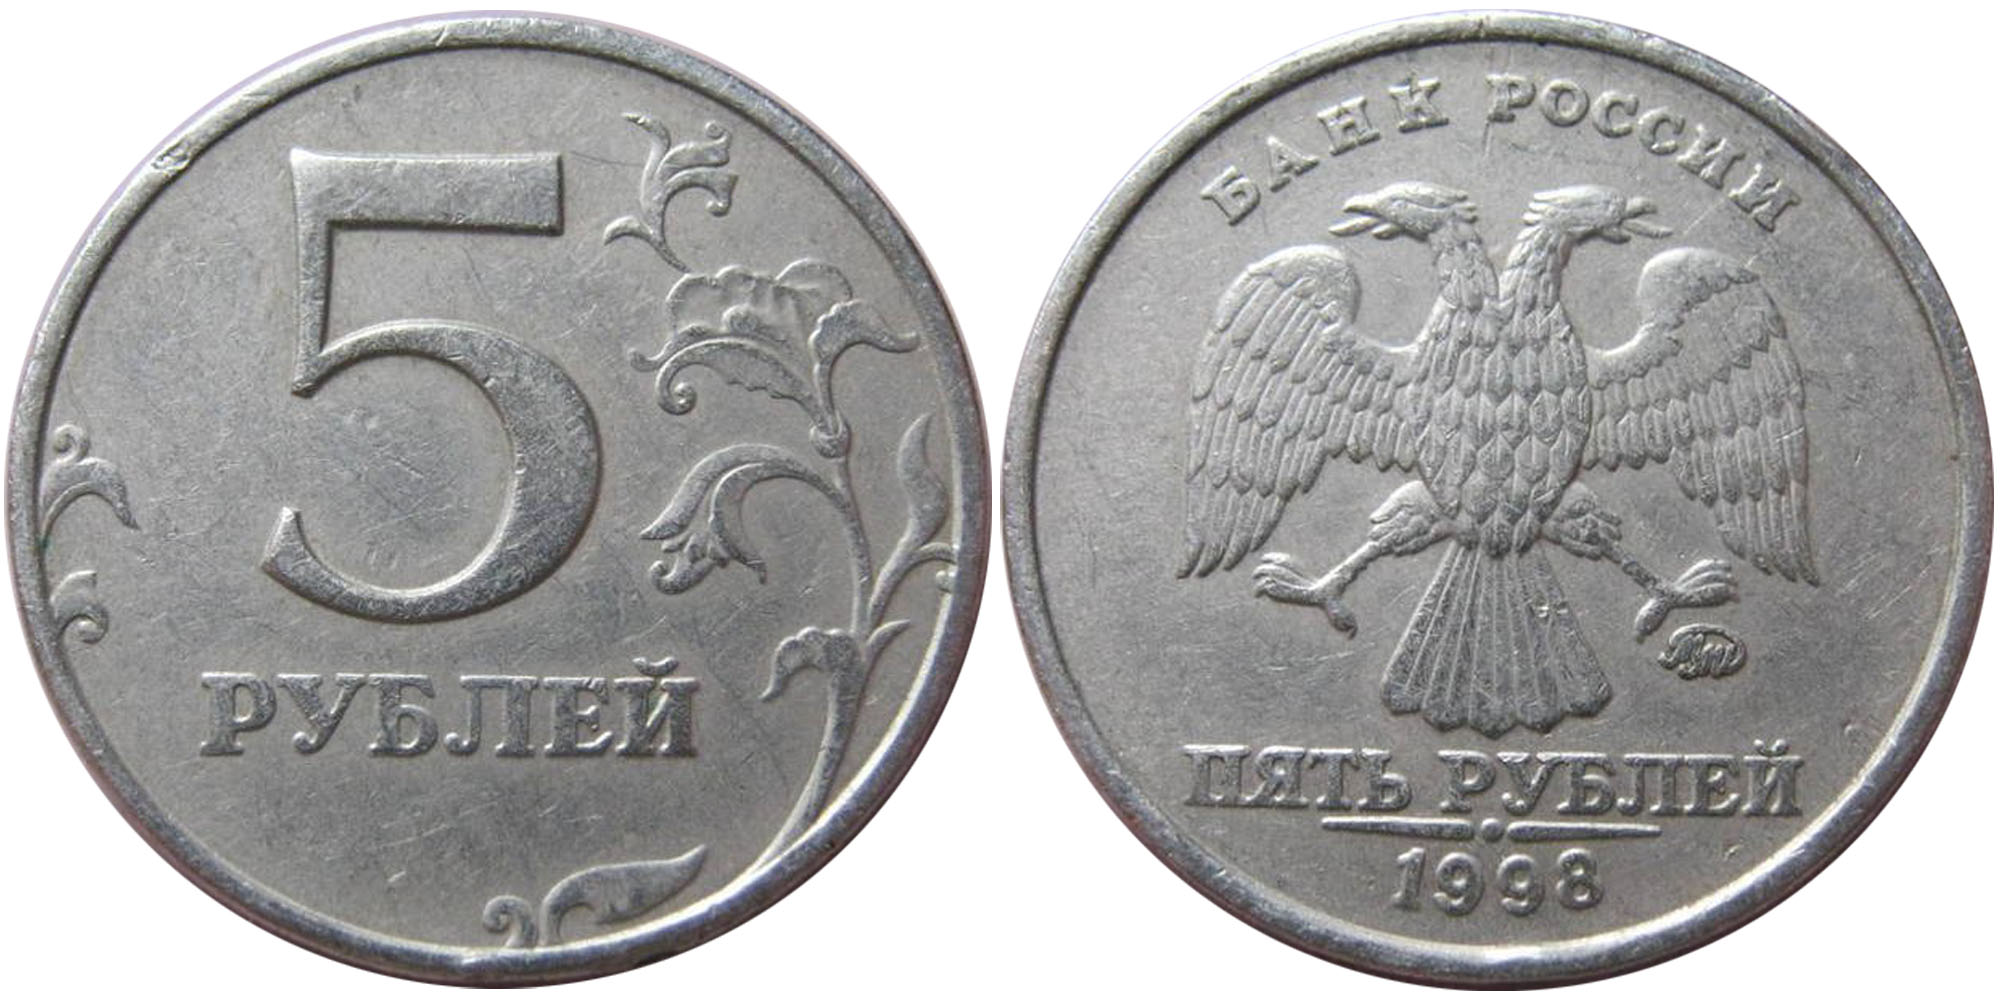 Найти 5 рублей. 5 Рублей 1998 ММД. Монета 5 рублей Аверс. Монета 5 рублей Аверс и реверс. 5 Рублей 98 ММД.